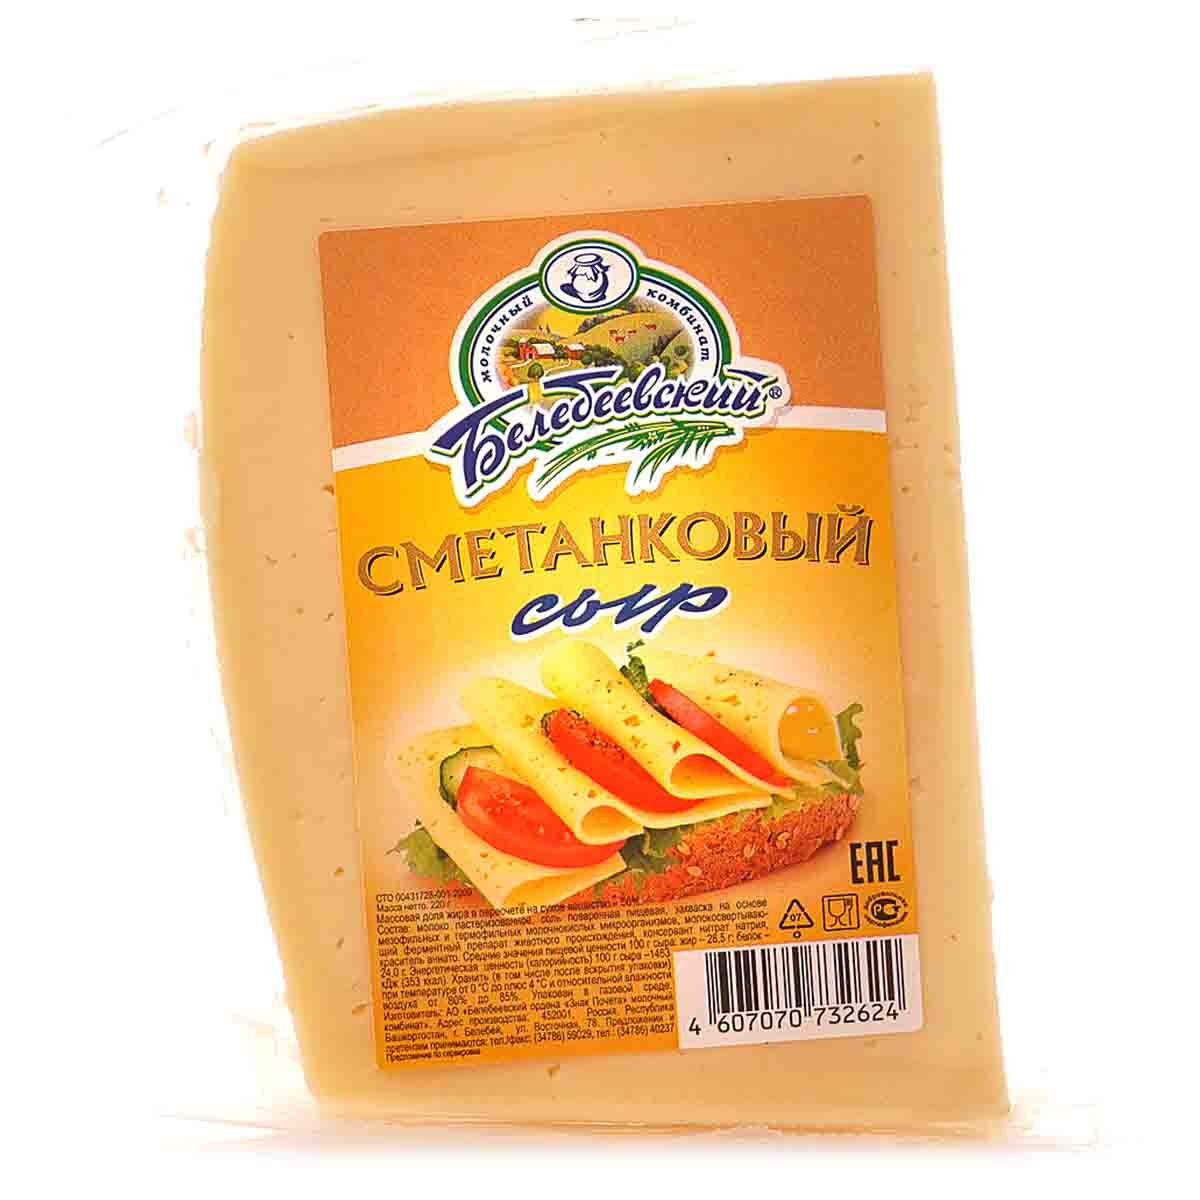 сыр белебеевский фото